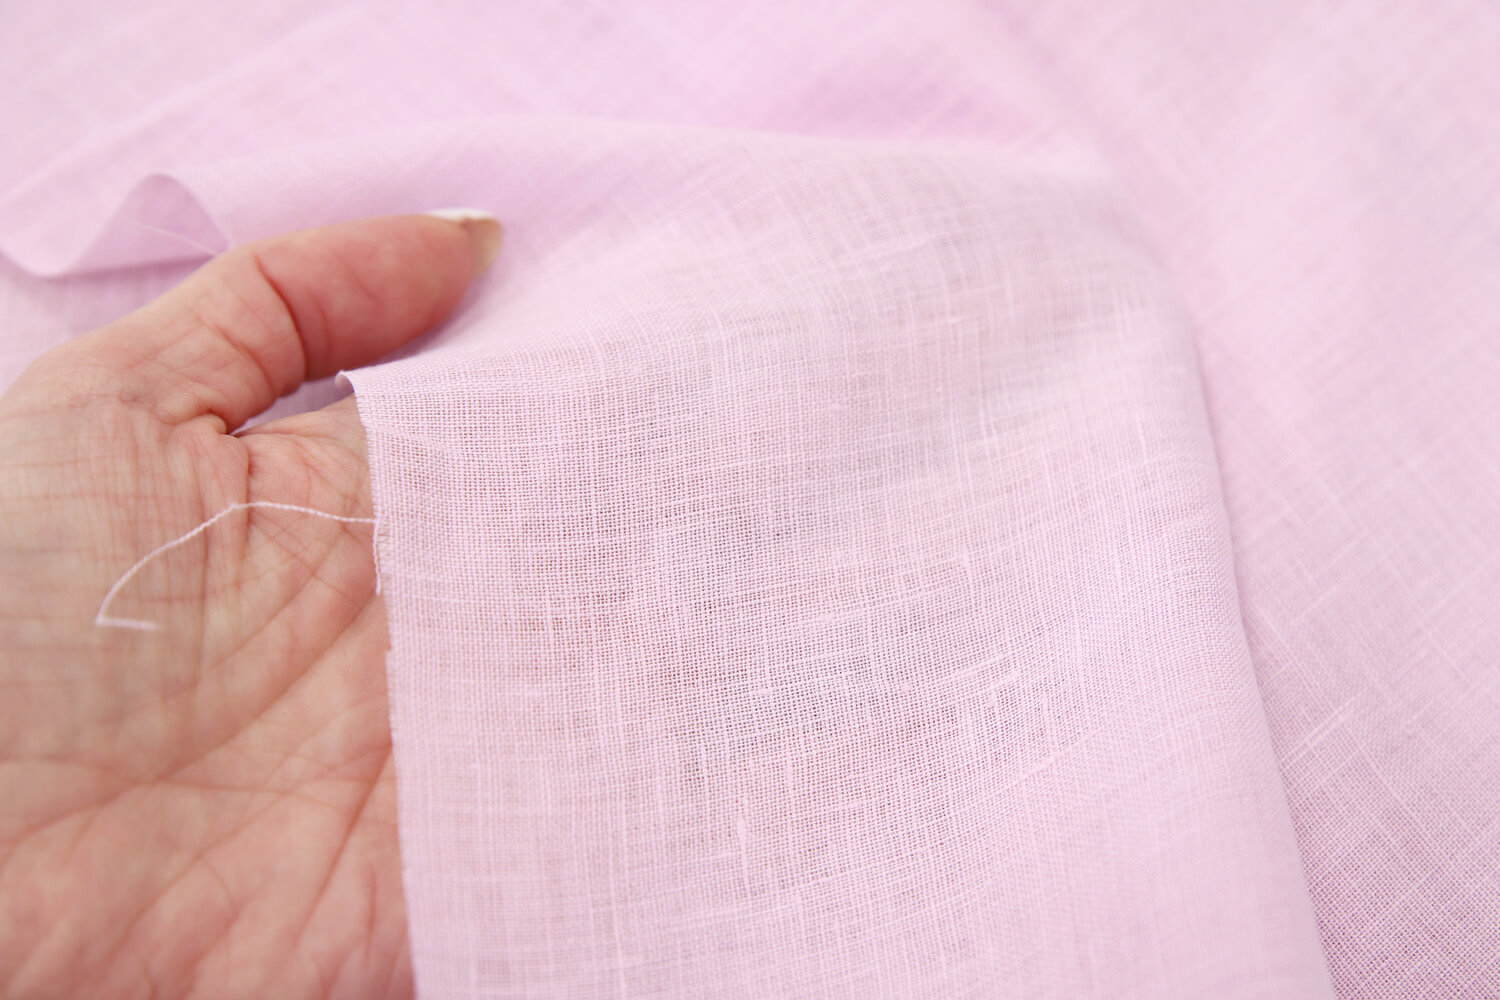 Льняная ткань Брун-ло Кучин-ли, цвет Розовый, фото 1